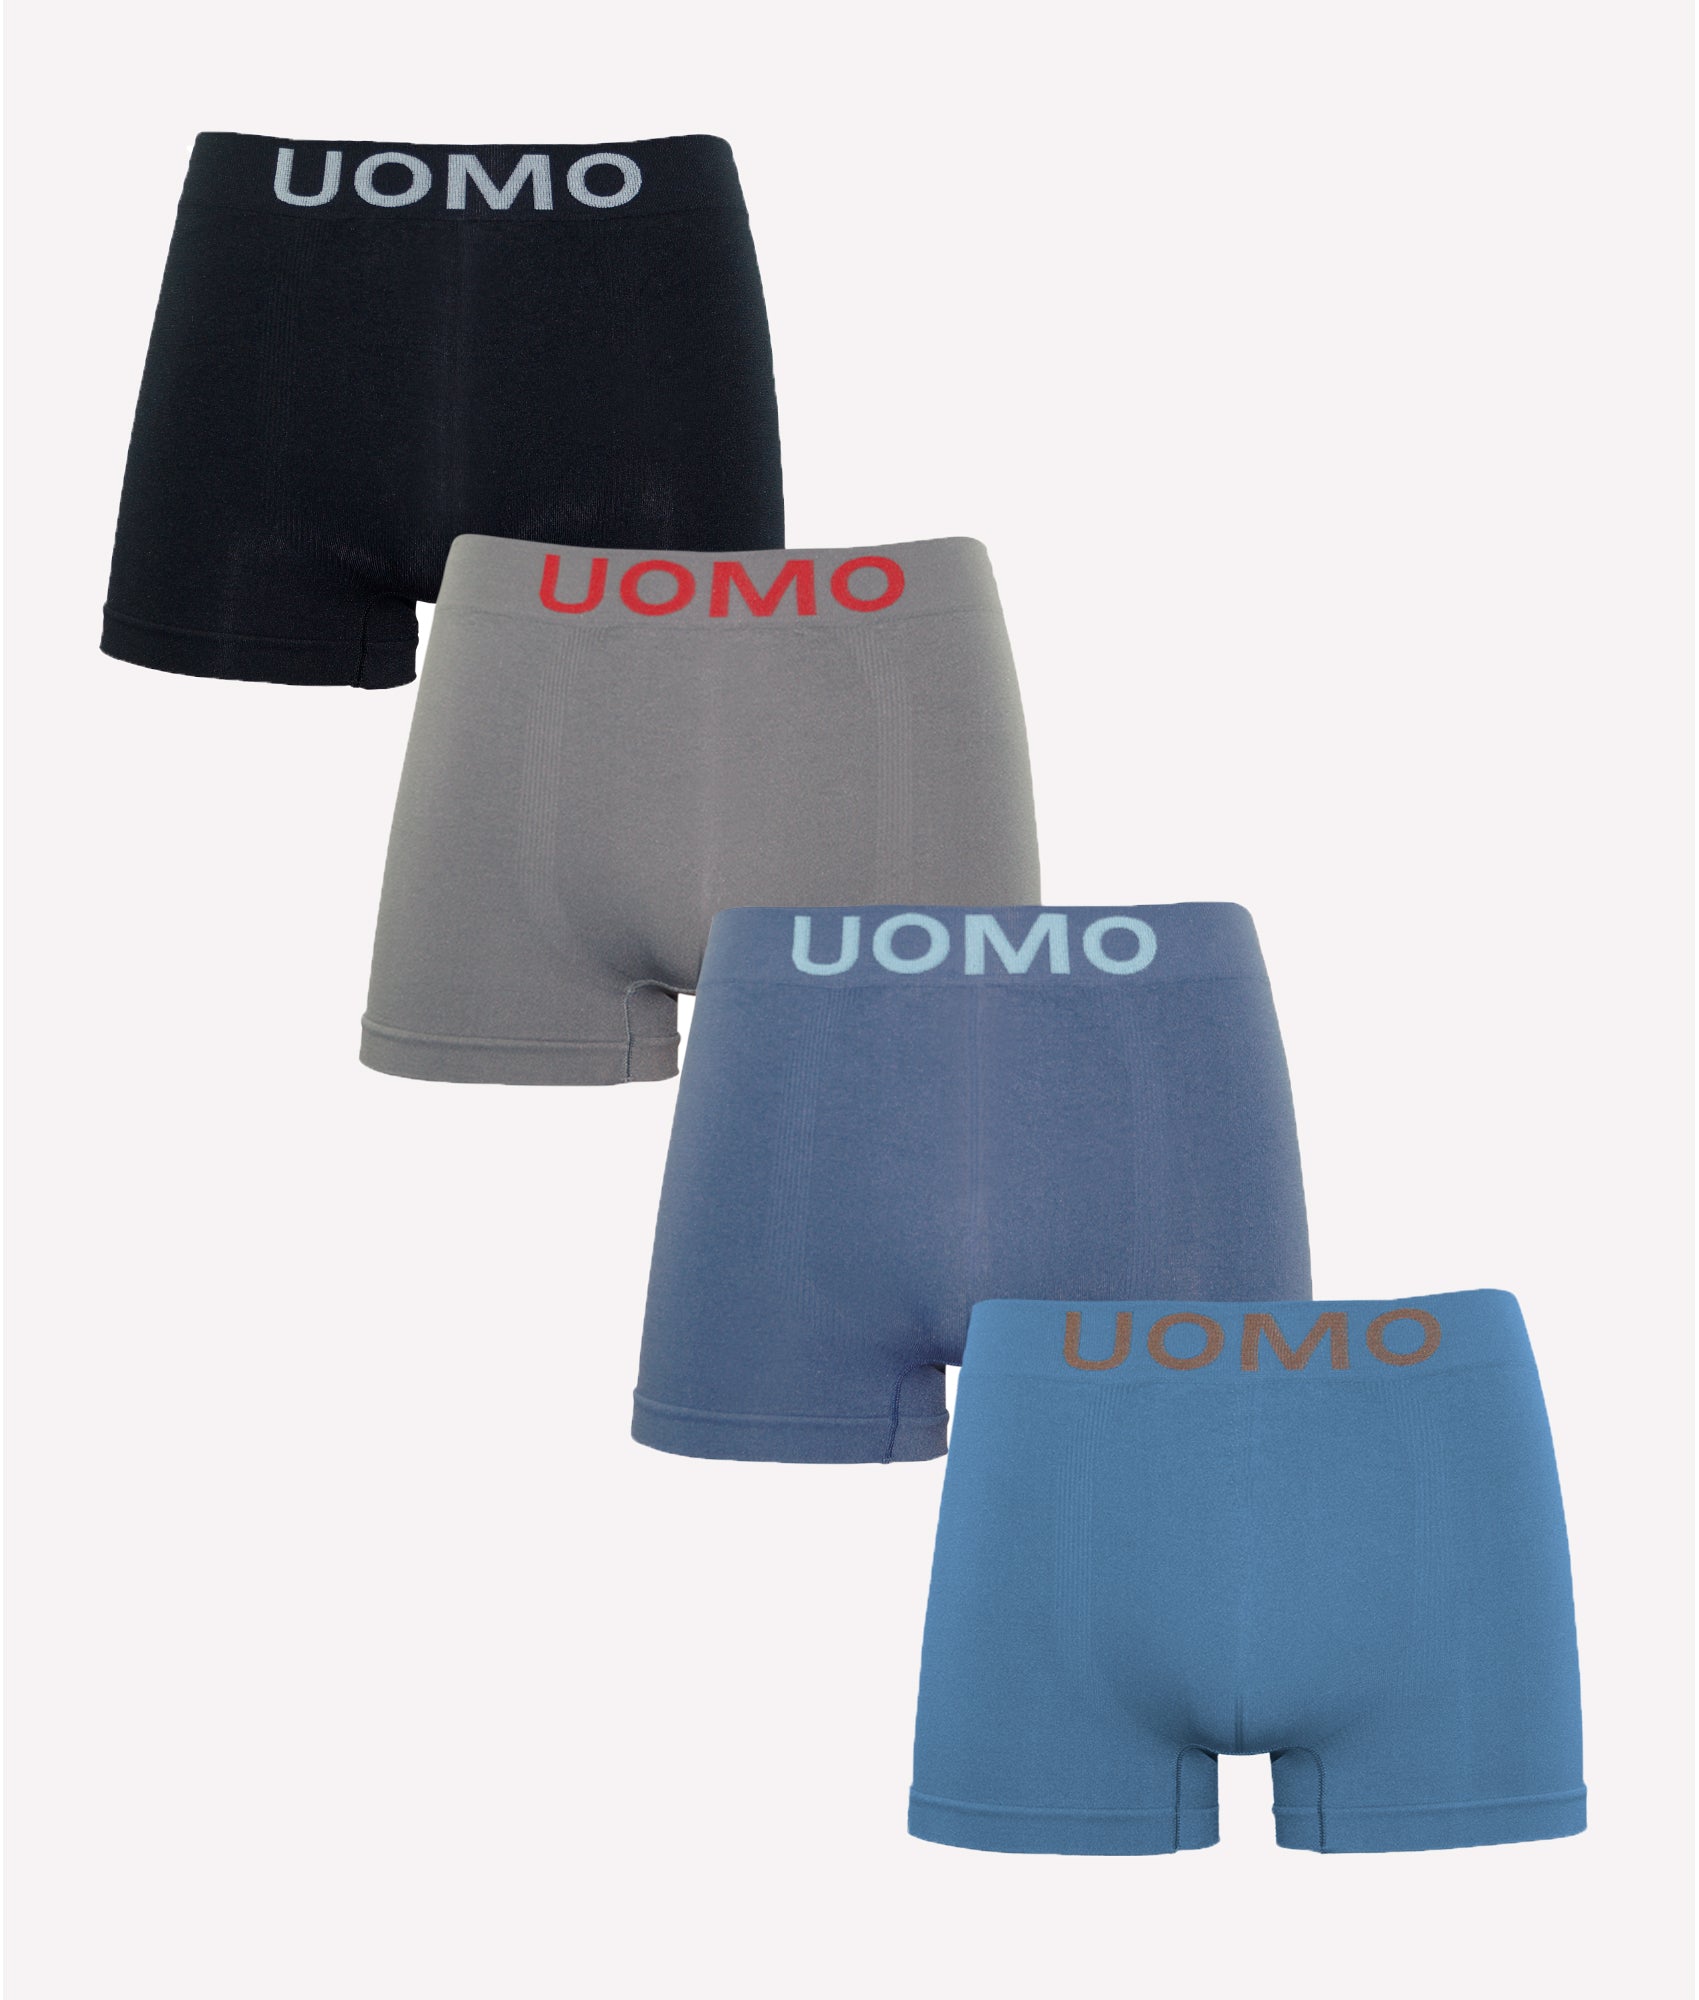 Calzoncillos boxer algodón sin costura color uniforme (Pack de 4)